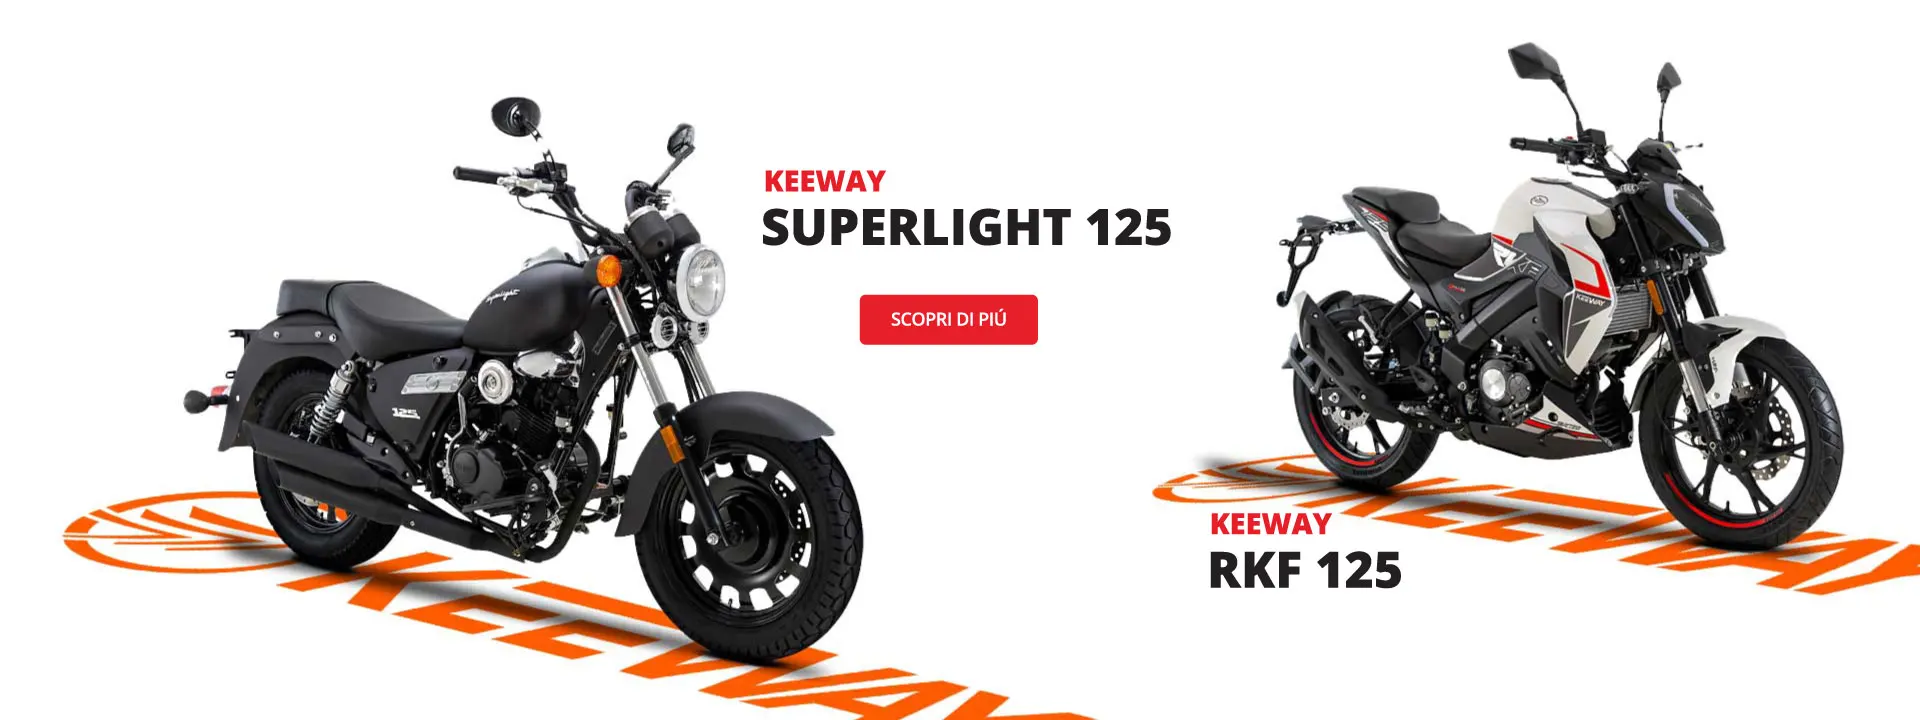 Keeway superlight 125 - RKF 125